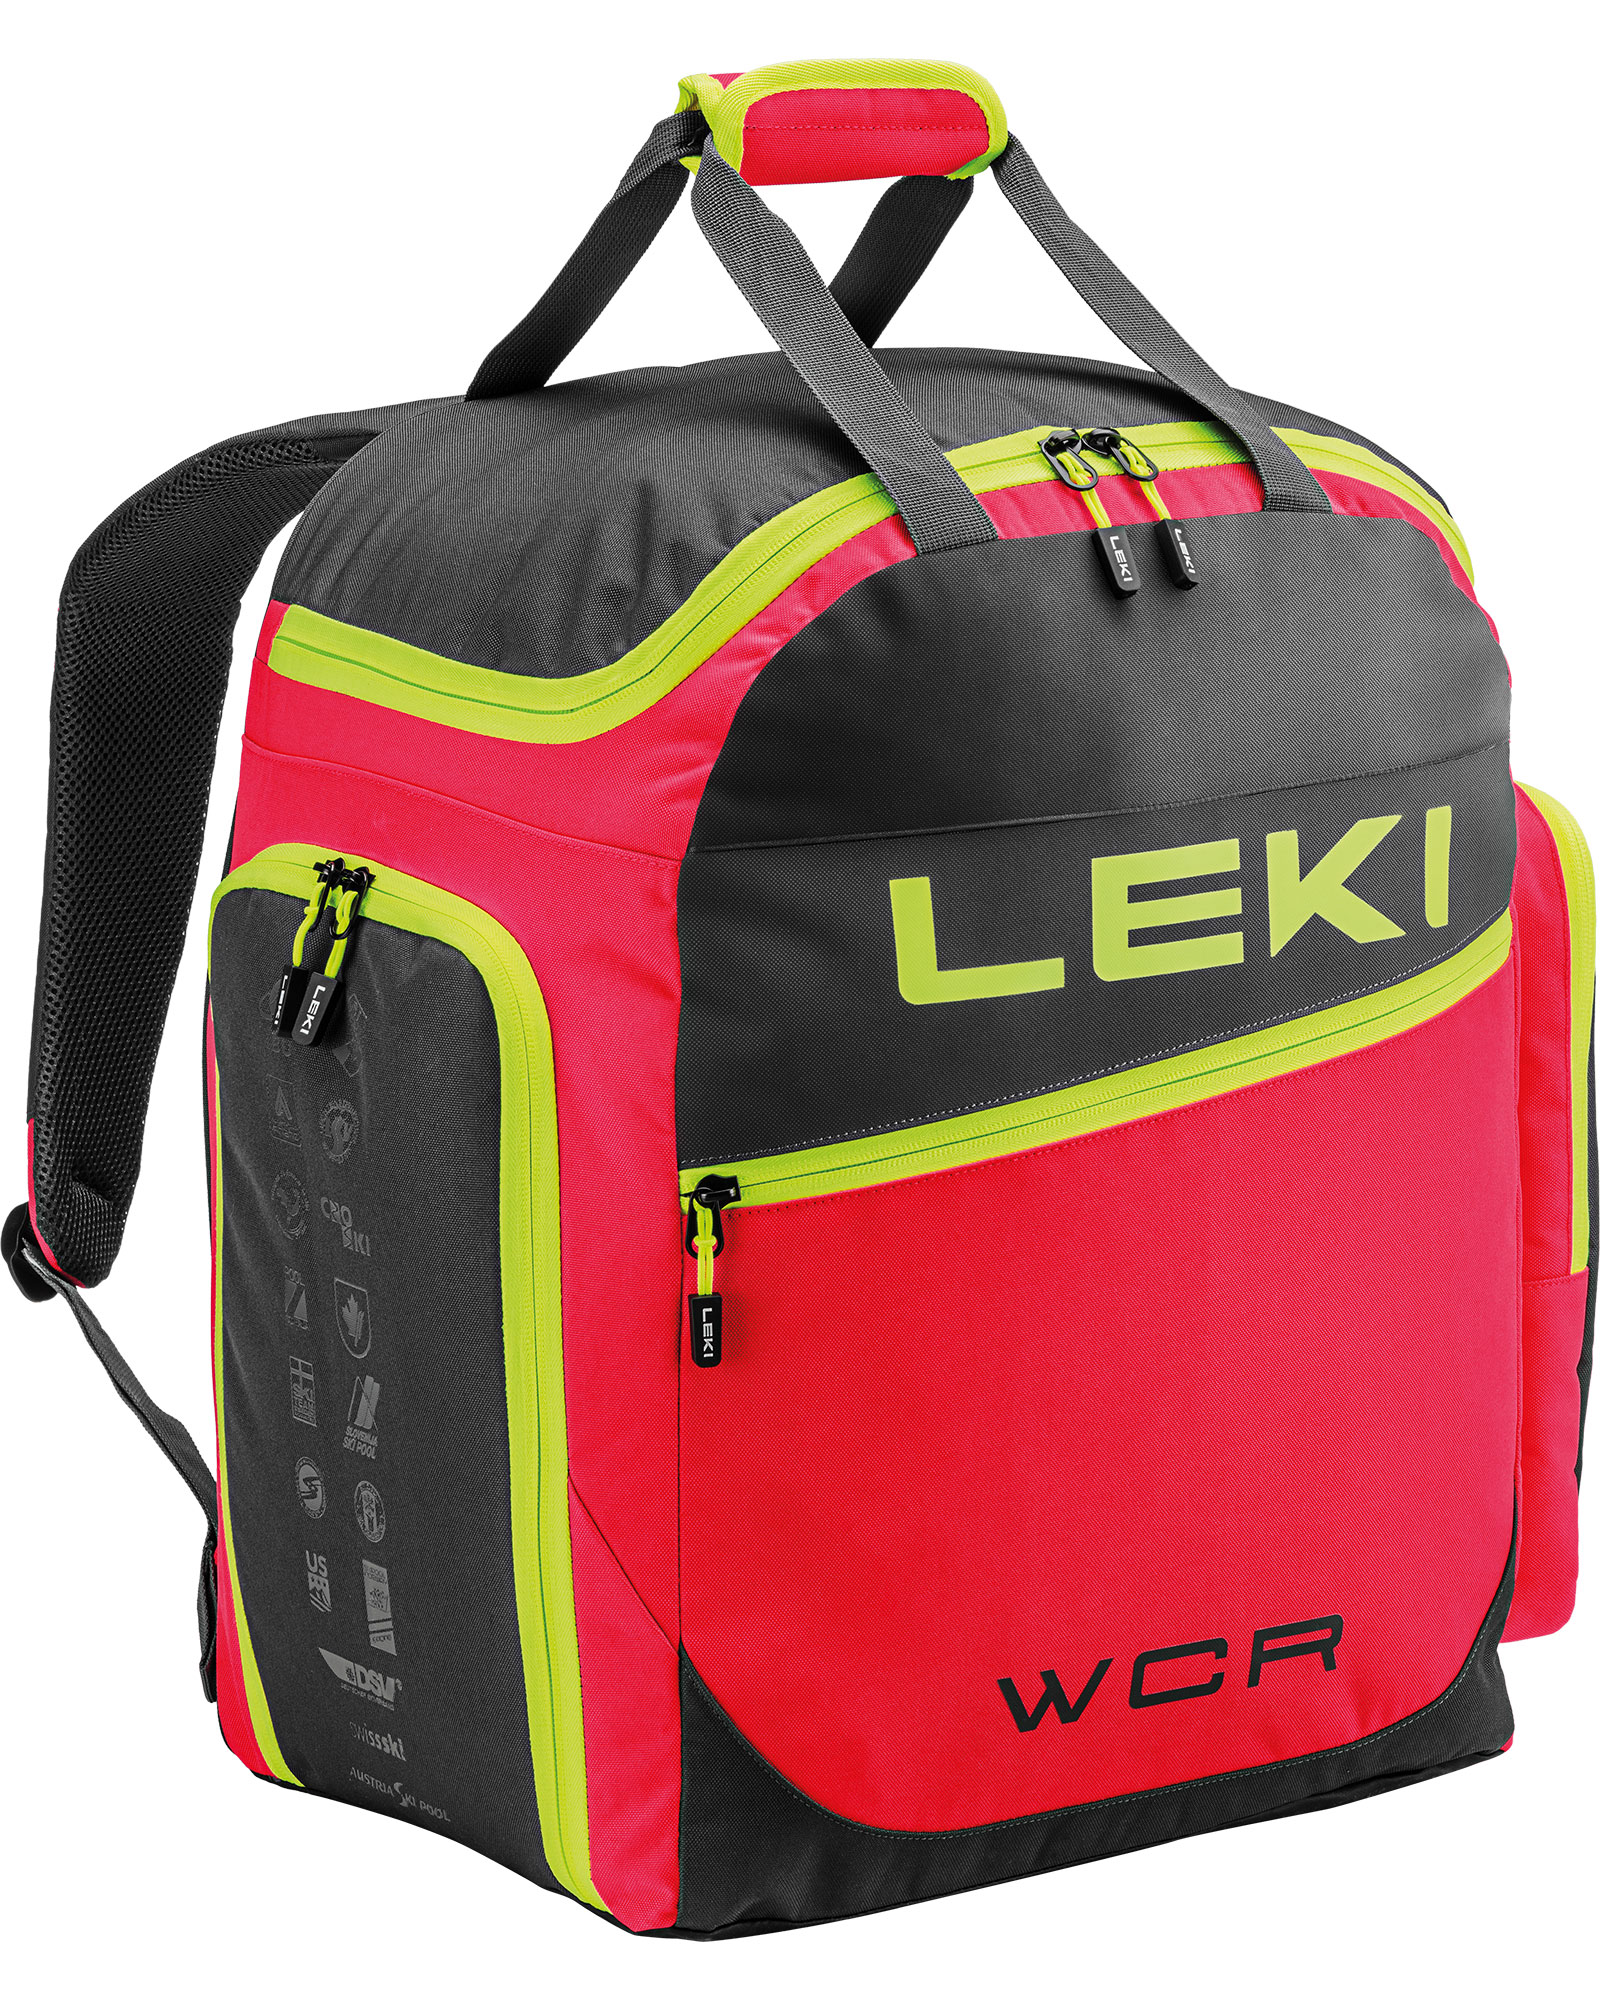 Leki Ski Boot Bag WCR 60L   RED